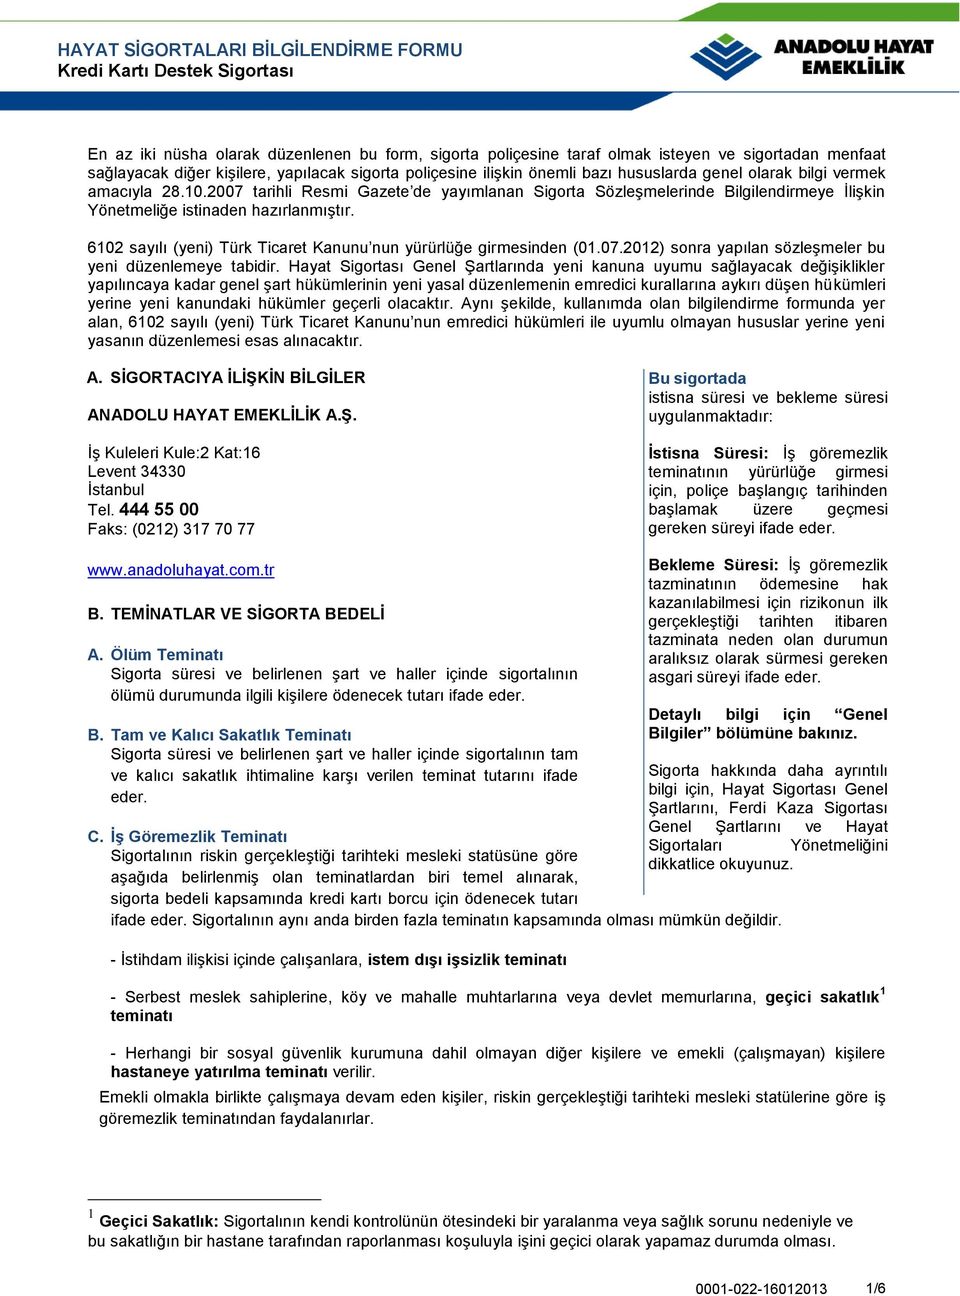 6102 sayılı (yeni) Türk Ticaret Kanunu nun yürürlüğe girmesinden (01.07.2012) sonra yapılan sözleşmeler bu yeni düzenlemeye tabidir.